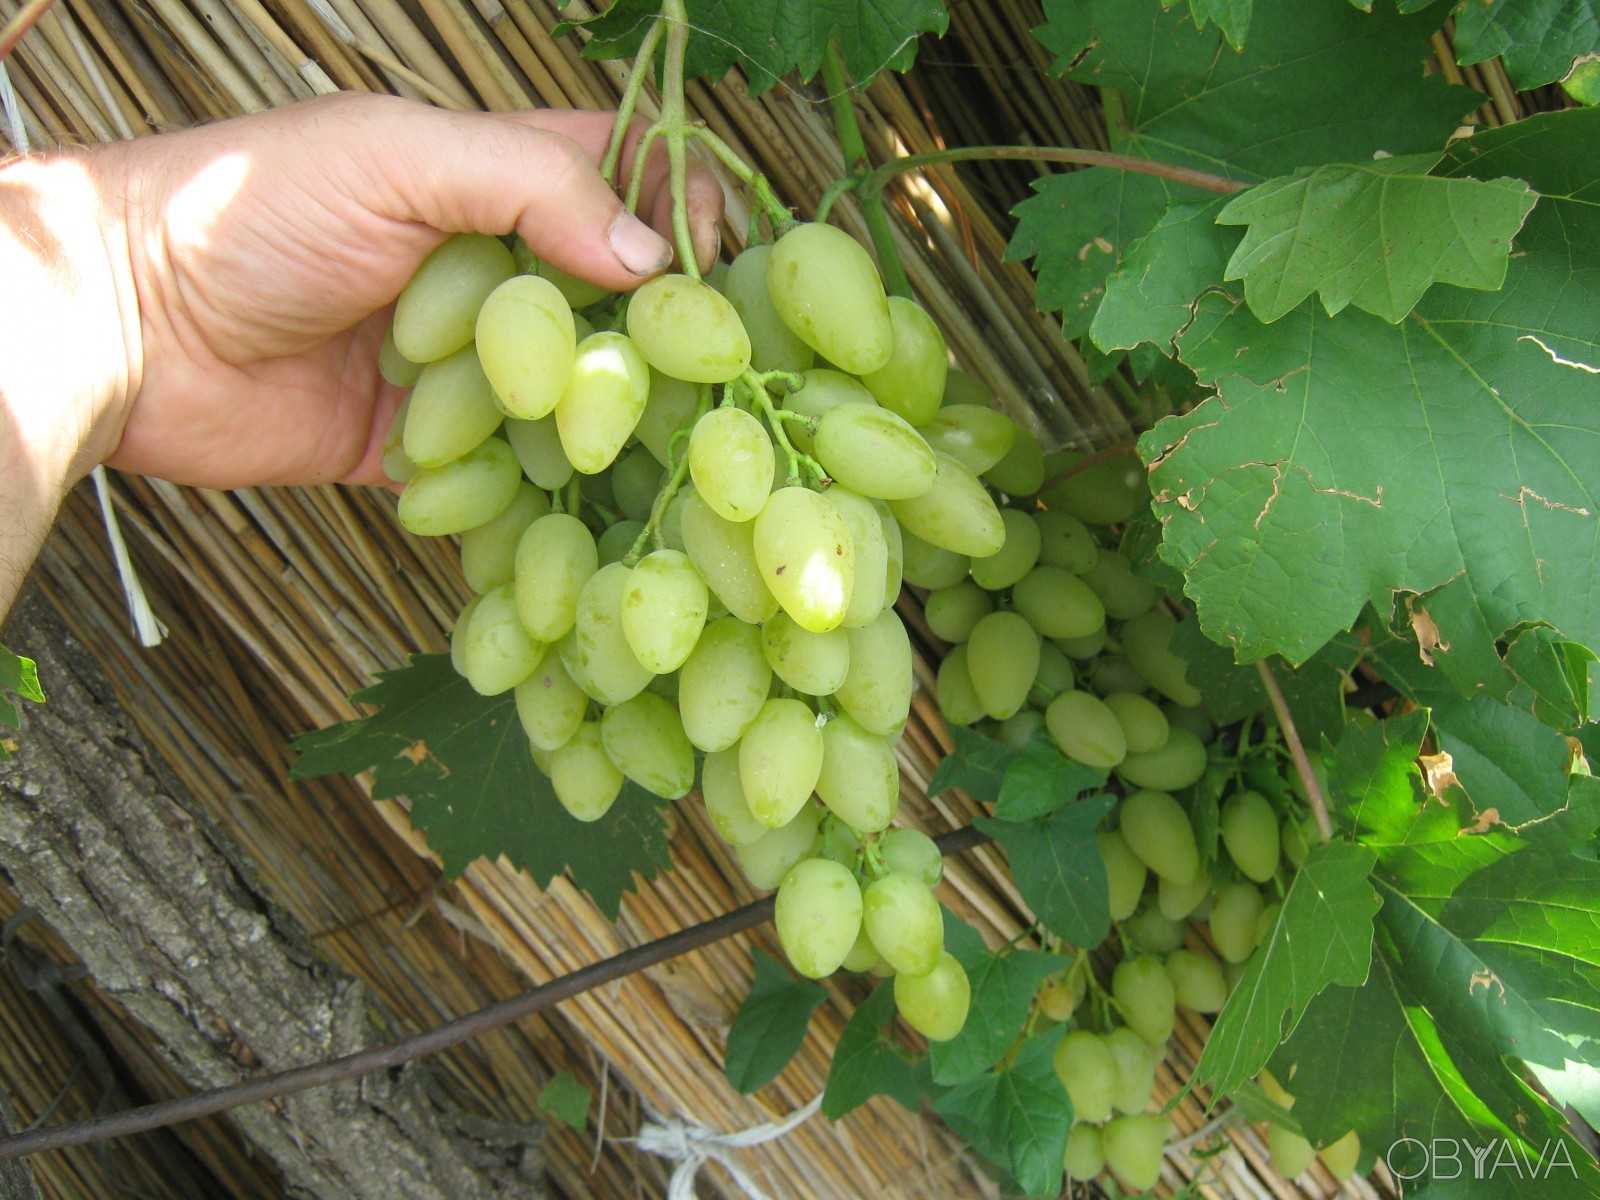 Лучшие сорта винограда для подмосковья и средней полосы россии